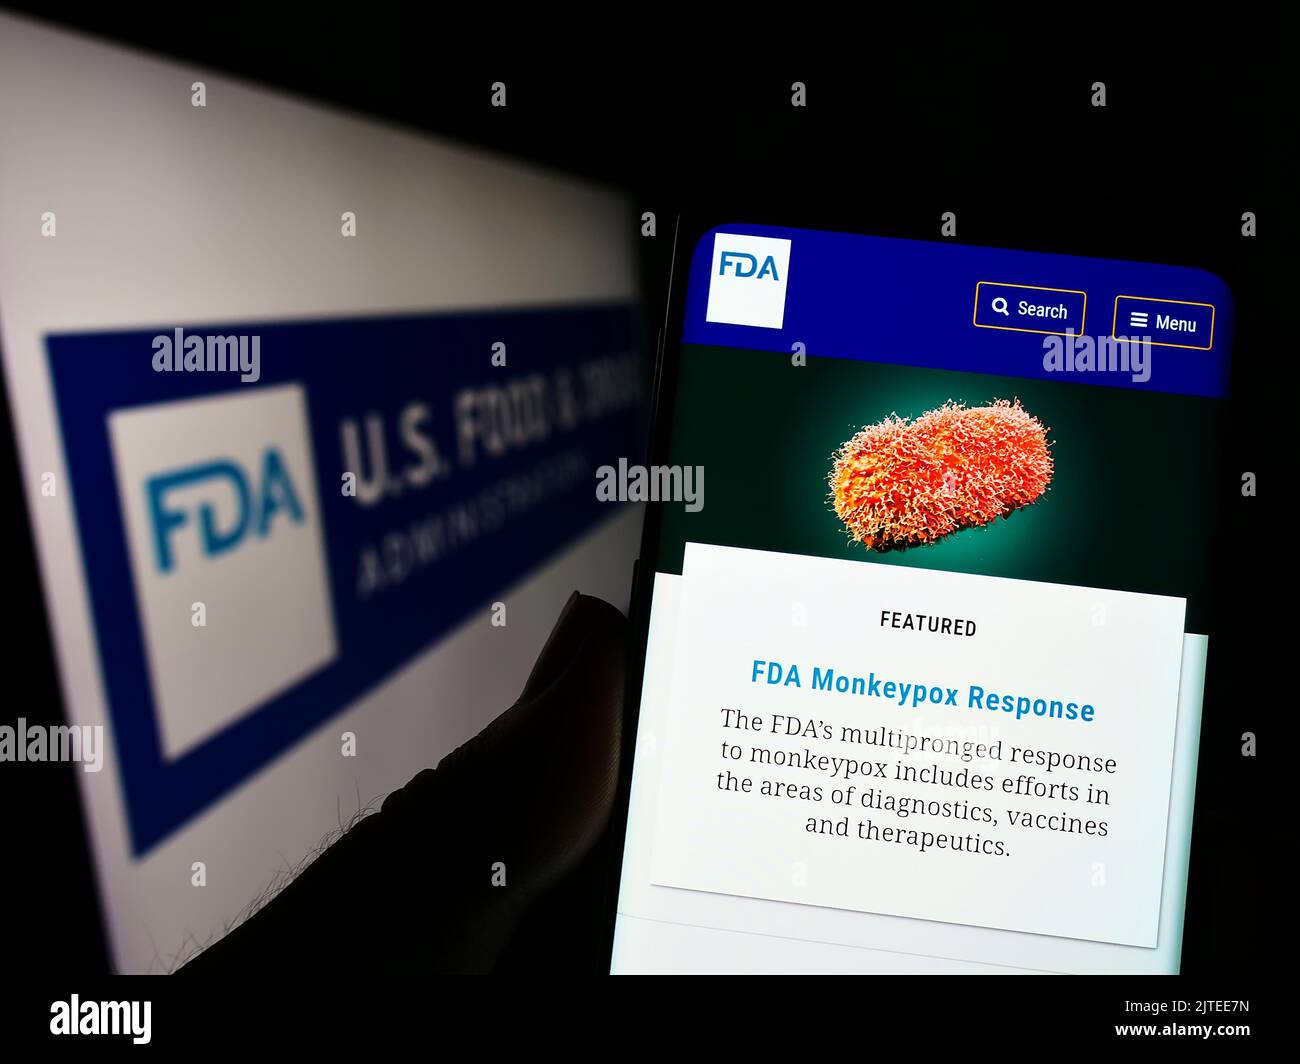 Persona que sostiene un teléfono celular con el sitio web de la Administración de Alimentos y Fármacos de los Estados Unidos (FDA) en la pantalla con el logotipo. Enfoque en el centro de la pantalla del teléfono. Foto de stock